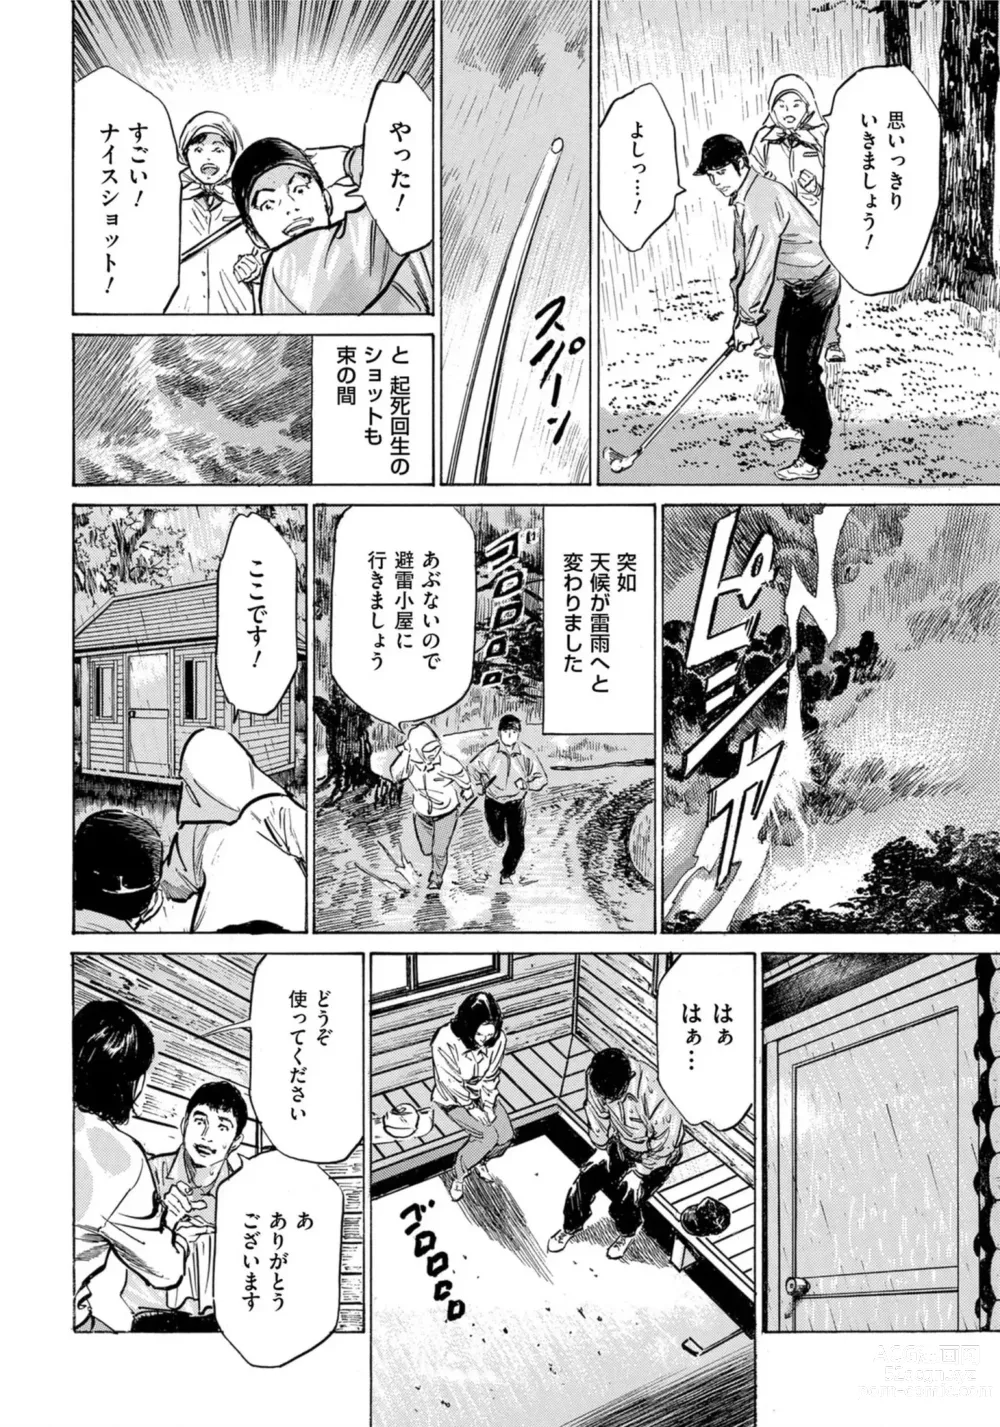 Page 9 of manga Hontou ni Atta Omowazu Zawatsuku Totteoki no Hanashi 14 episodes